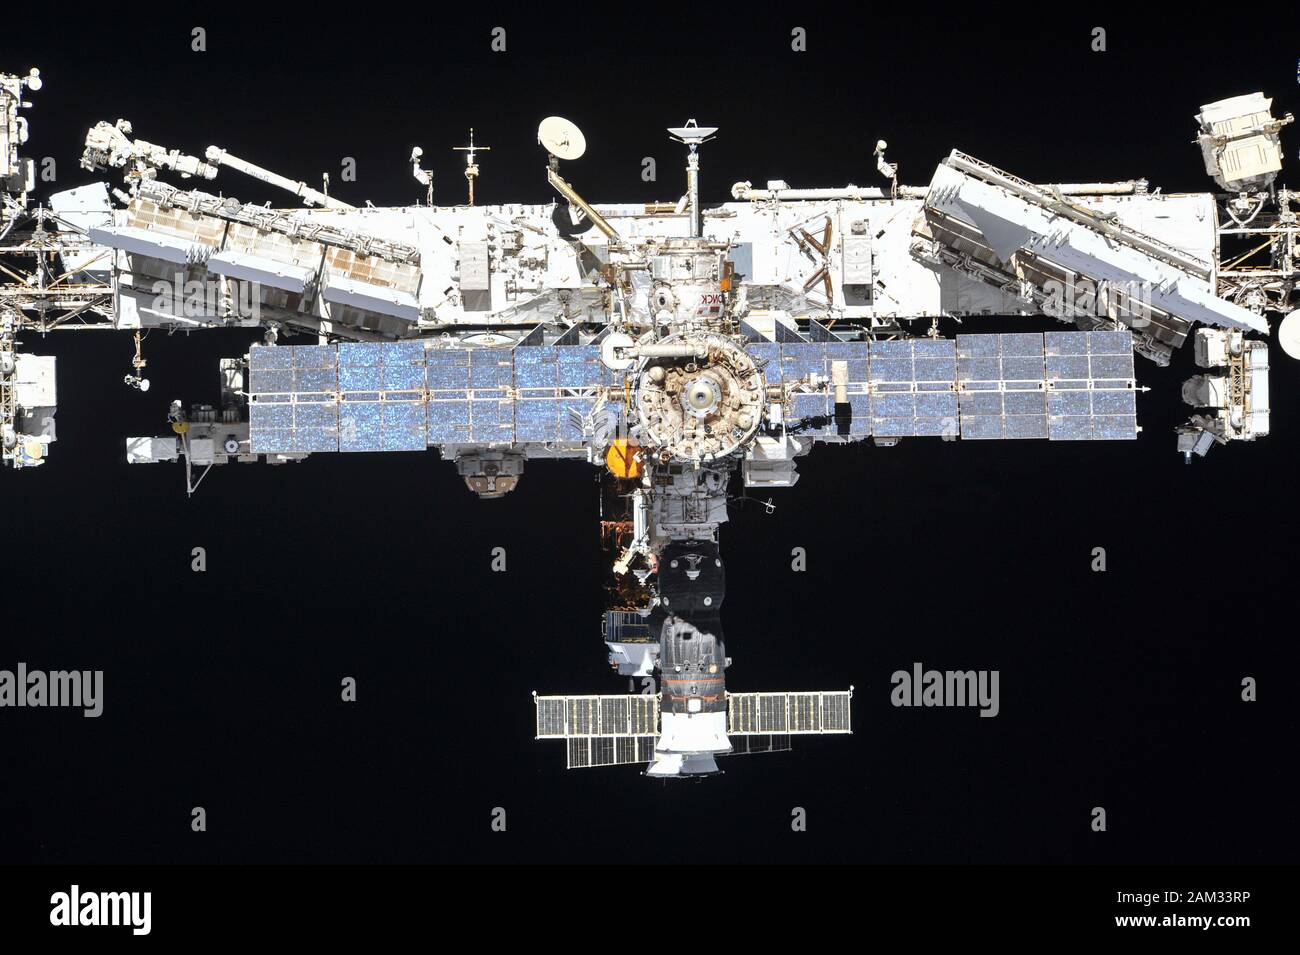 La Stazione spaziale Internazionale fotografata da 56 membri dell'equipaggio della spedizione da un veicolo spaziale Soyuz dopo il disancoraggio il 4 ottobre 2018 Foto Stock